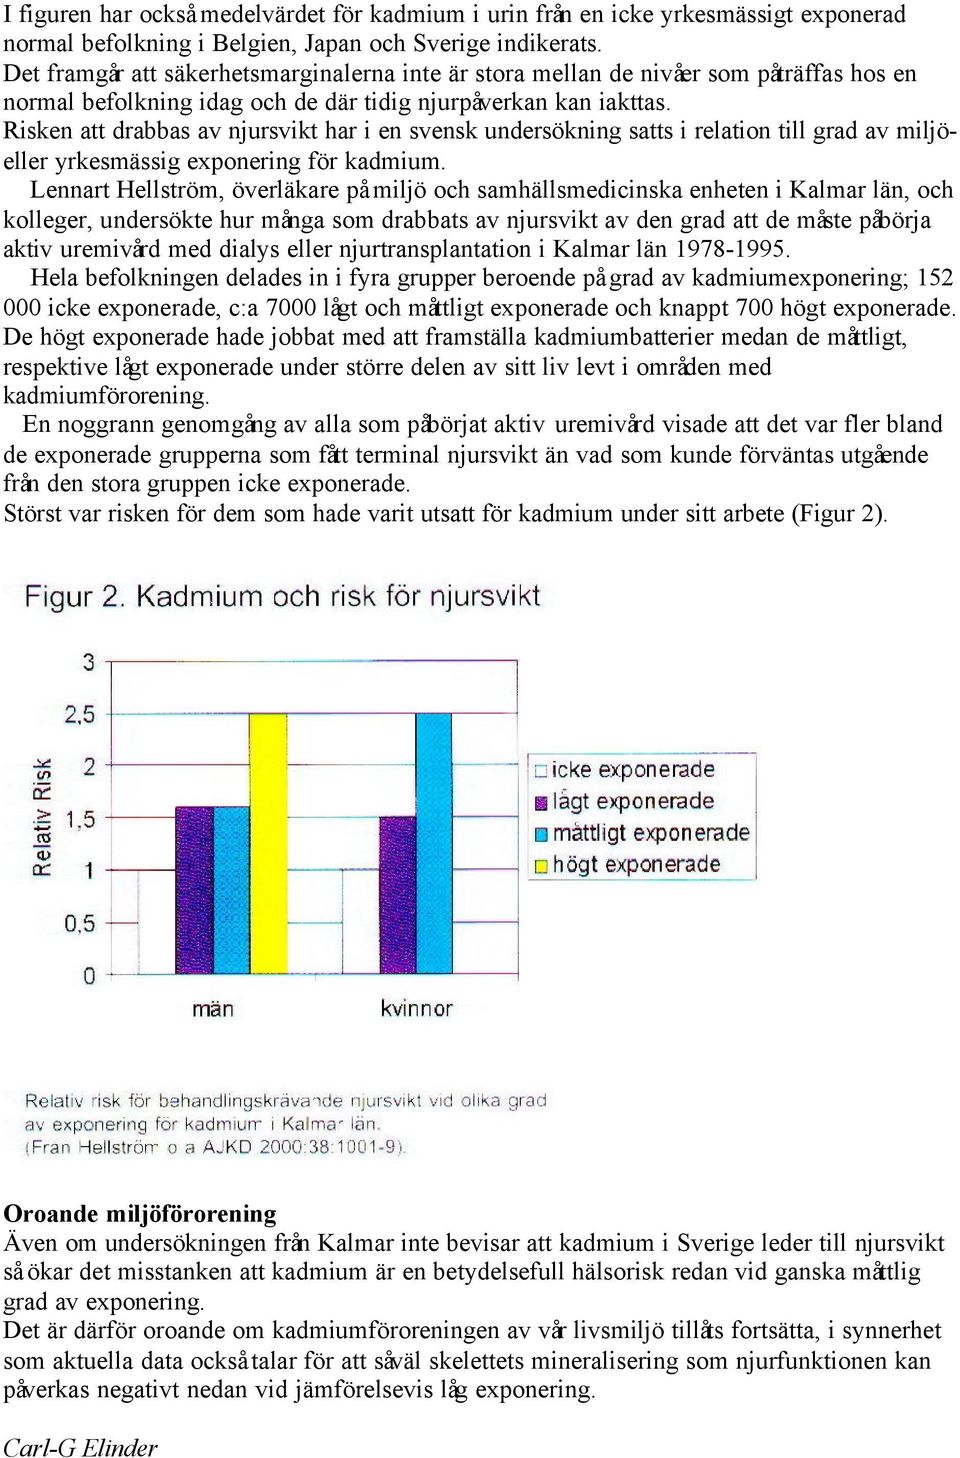 Risken att drabbas av njursvikt har i en svensk undersökning satts i relation till grad av miljöeller yrkesmässig exponering för kadmium.